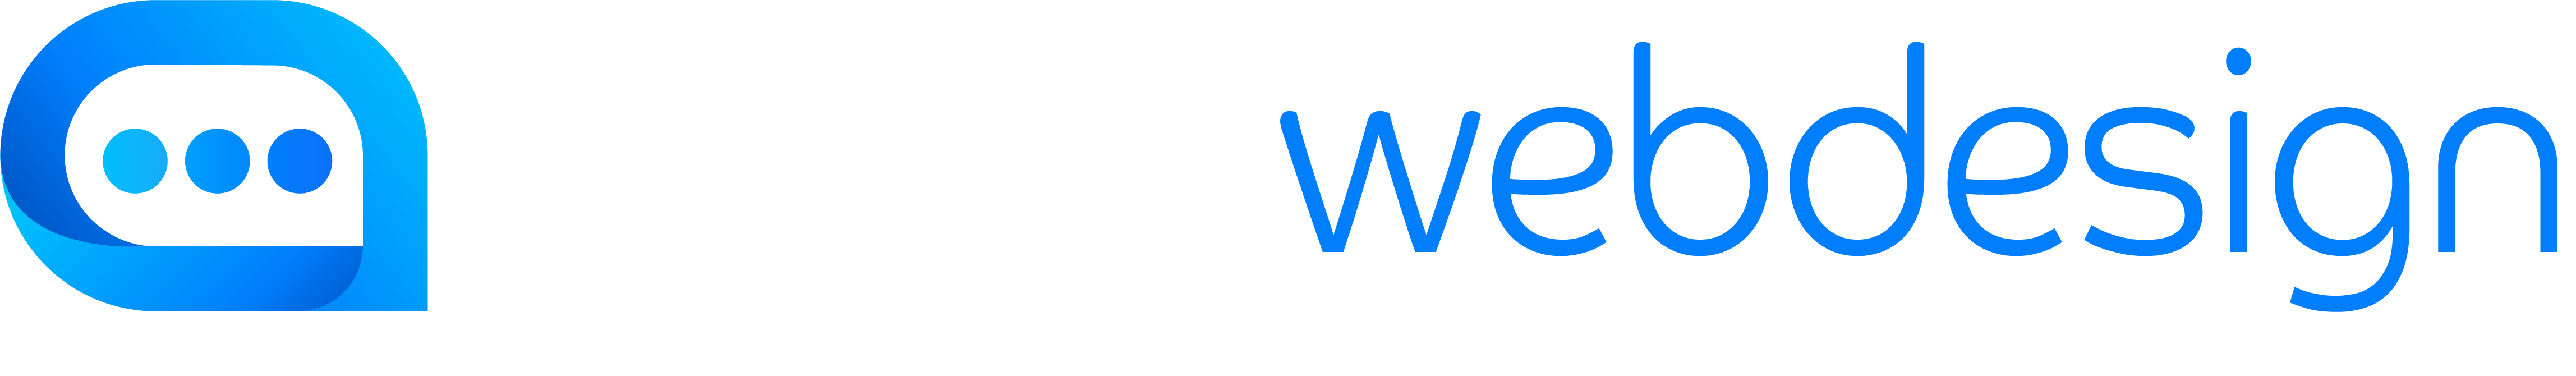 5265-logo-webdesign-hvit.png